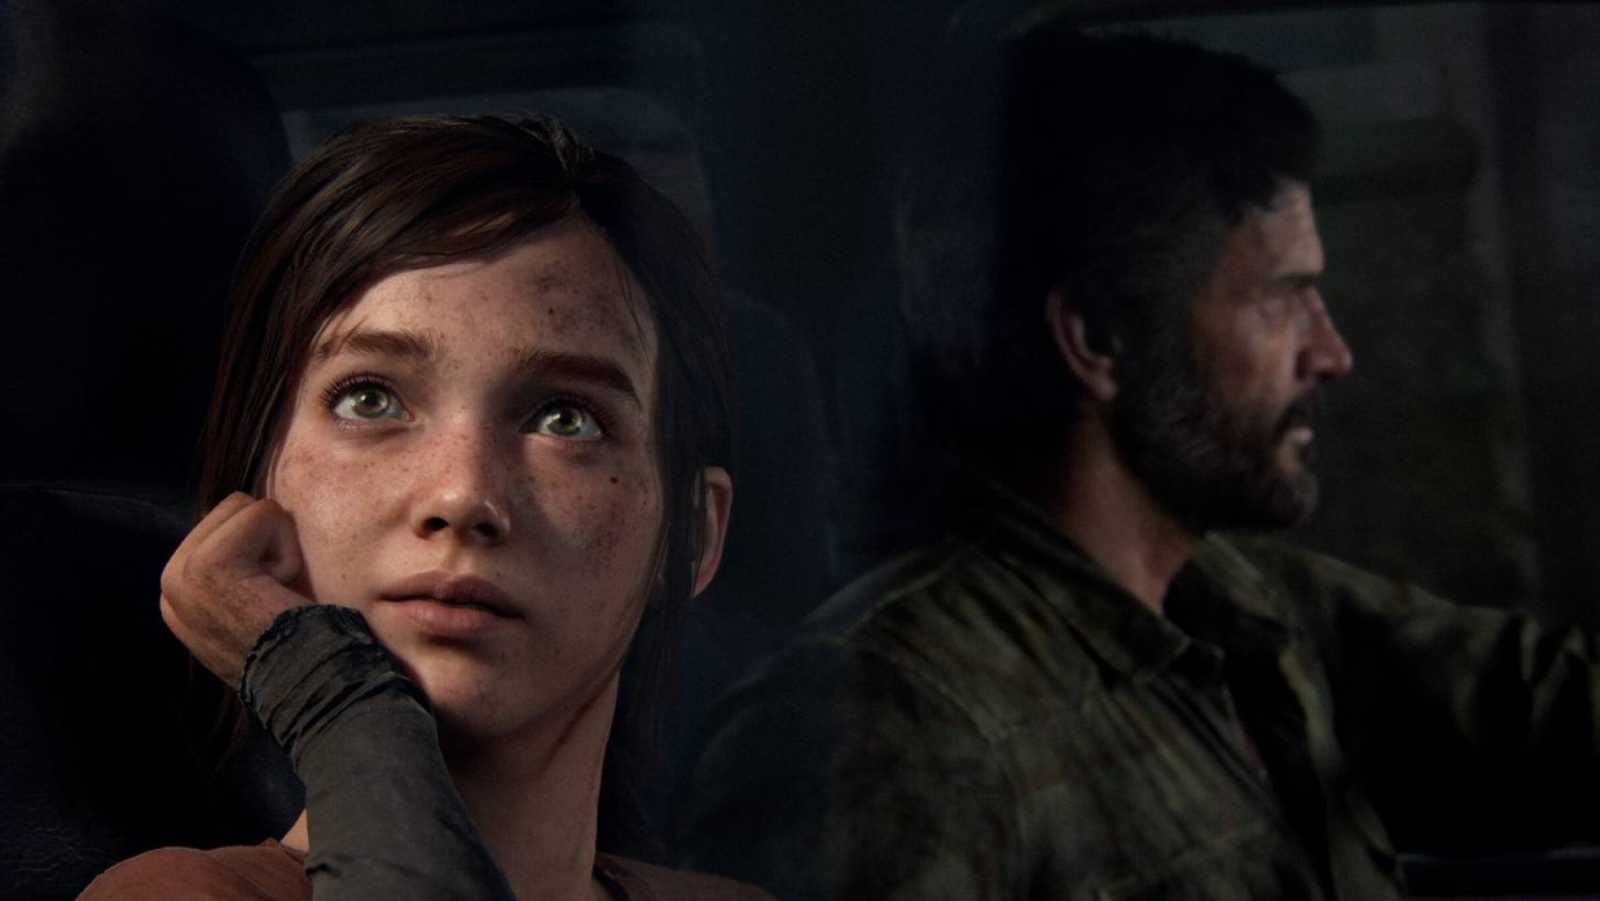 Došlo k úniku screenshotů a ukázky z The Last of Us Part I. Remake údajně neobsahuje žádné zásadní úpravy v hratelnosti